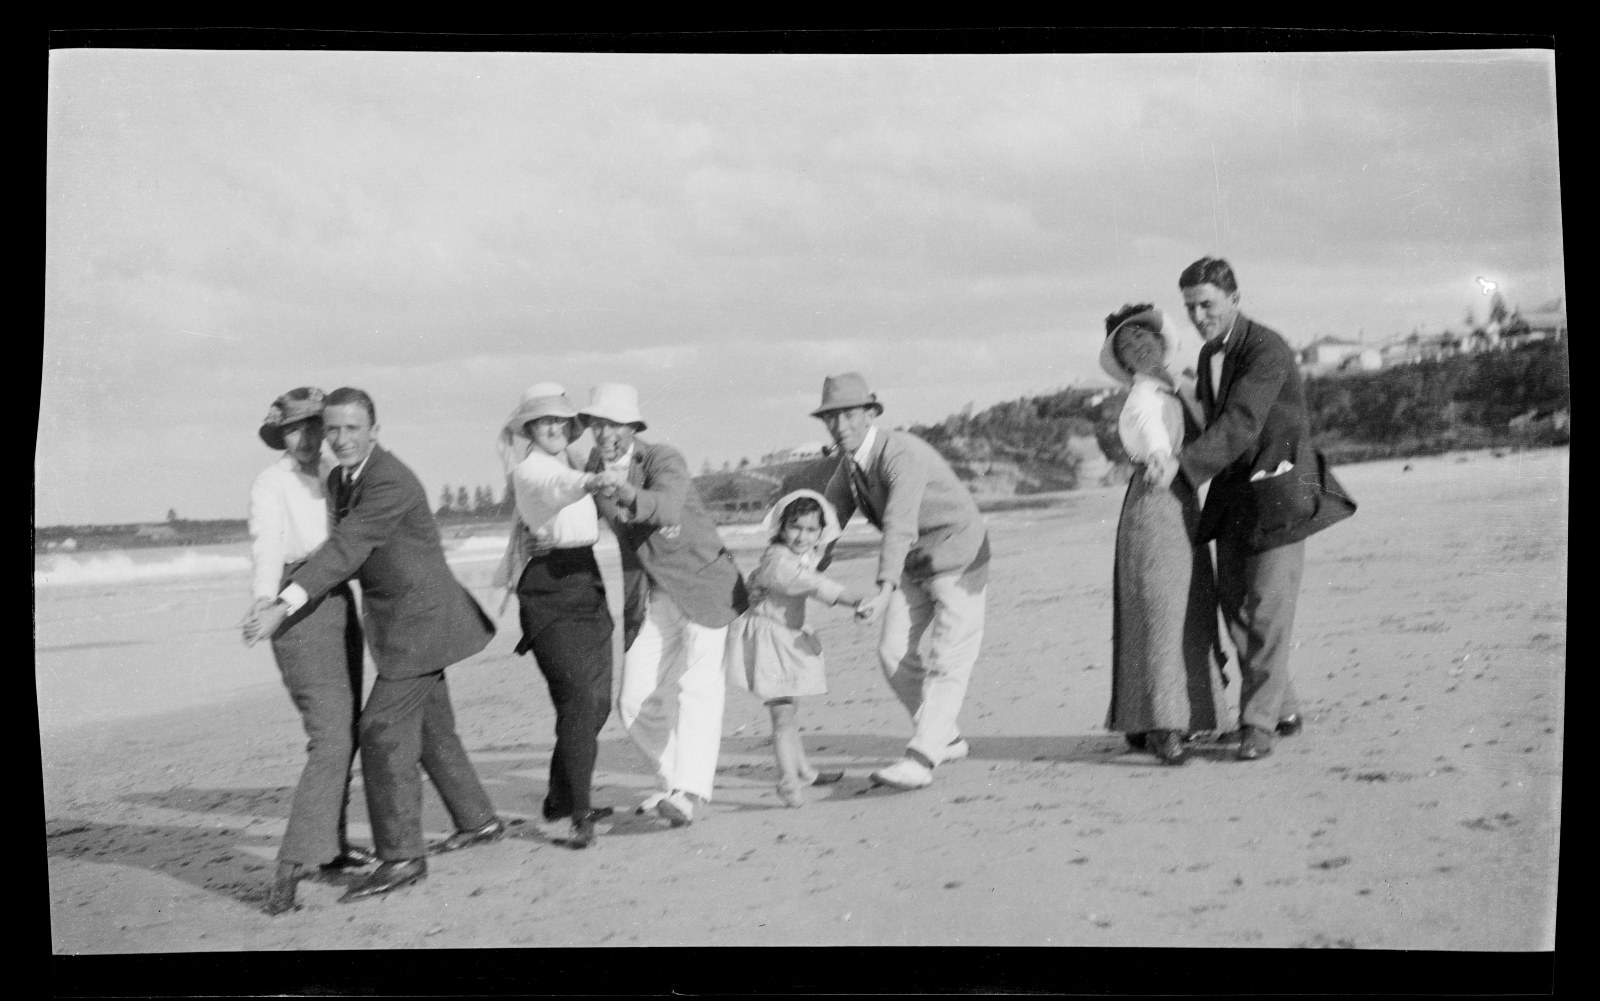  Picnic party dancing on the beach at Wollongong, Christmas 1915 / Robert Barnet